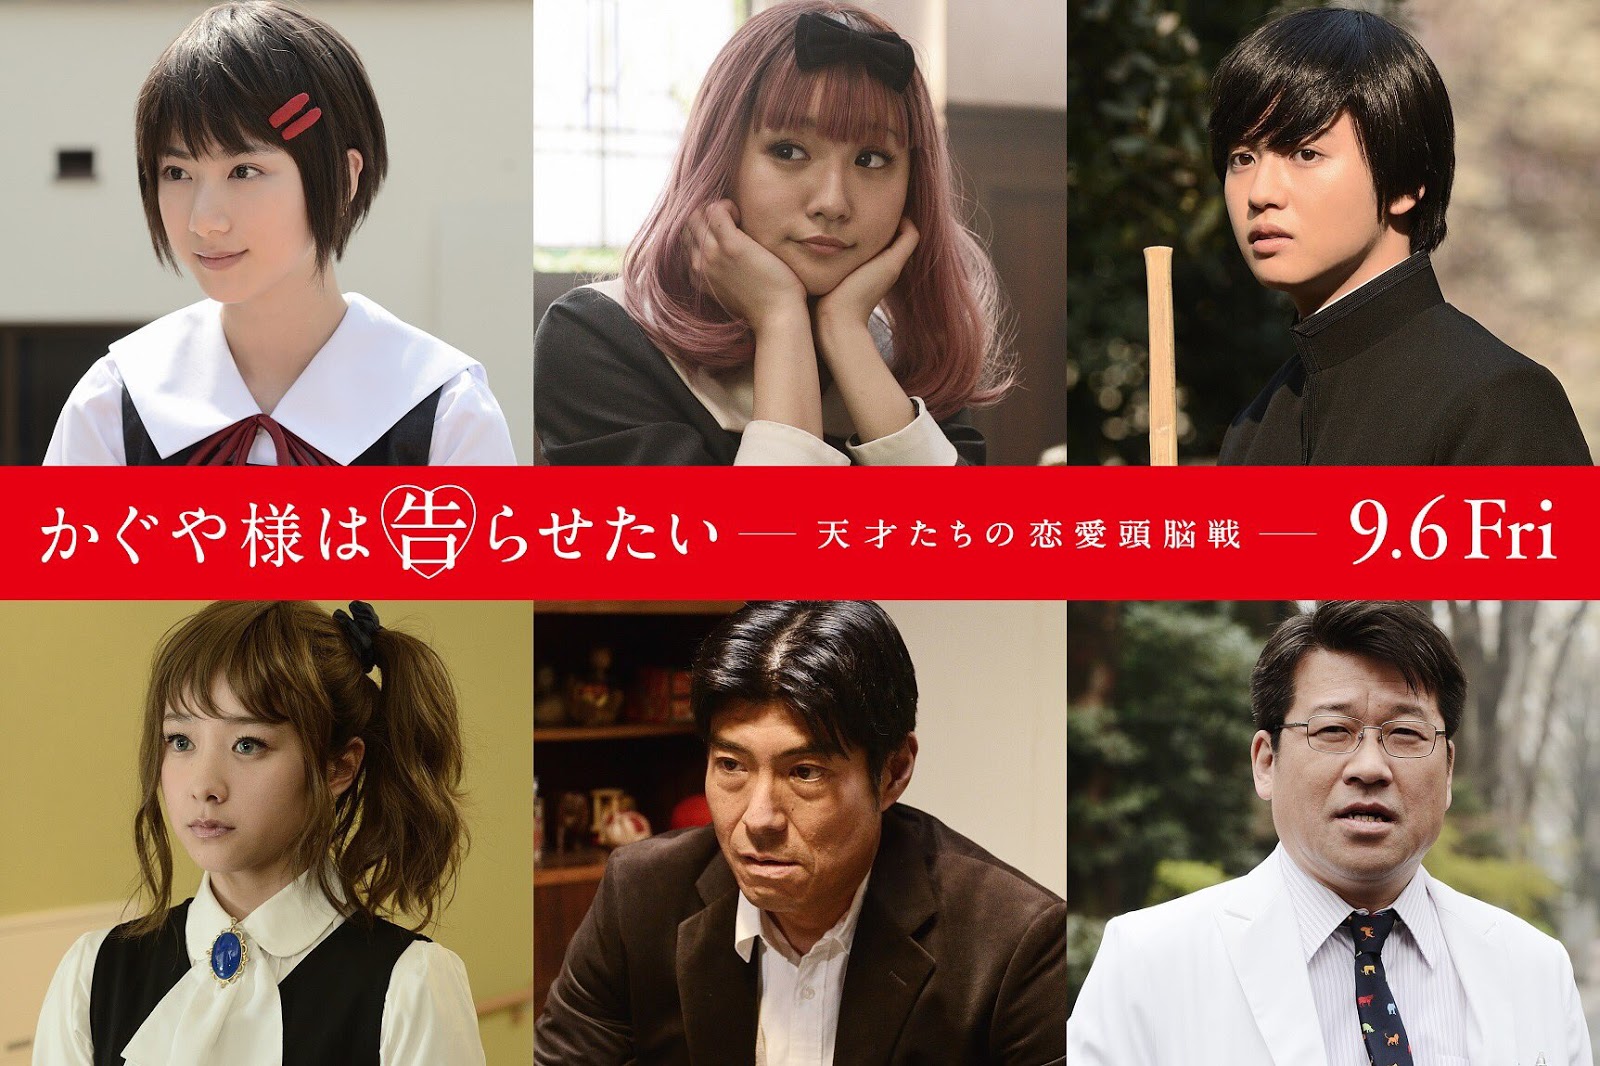 Sugoi Cast: Celebra el 14 de febrerro con Kaguya-Sama: Love is War en el  cine